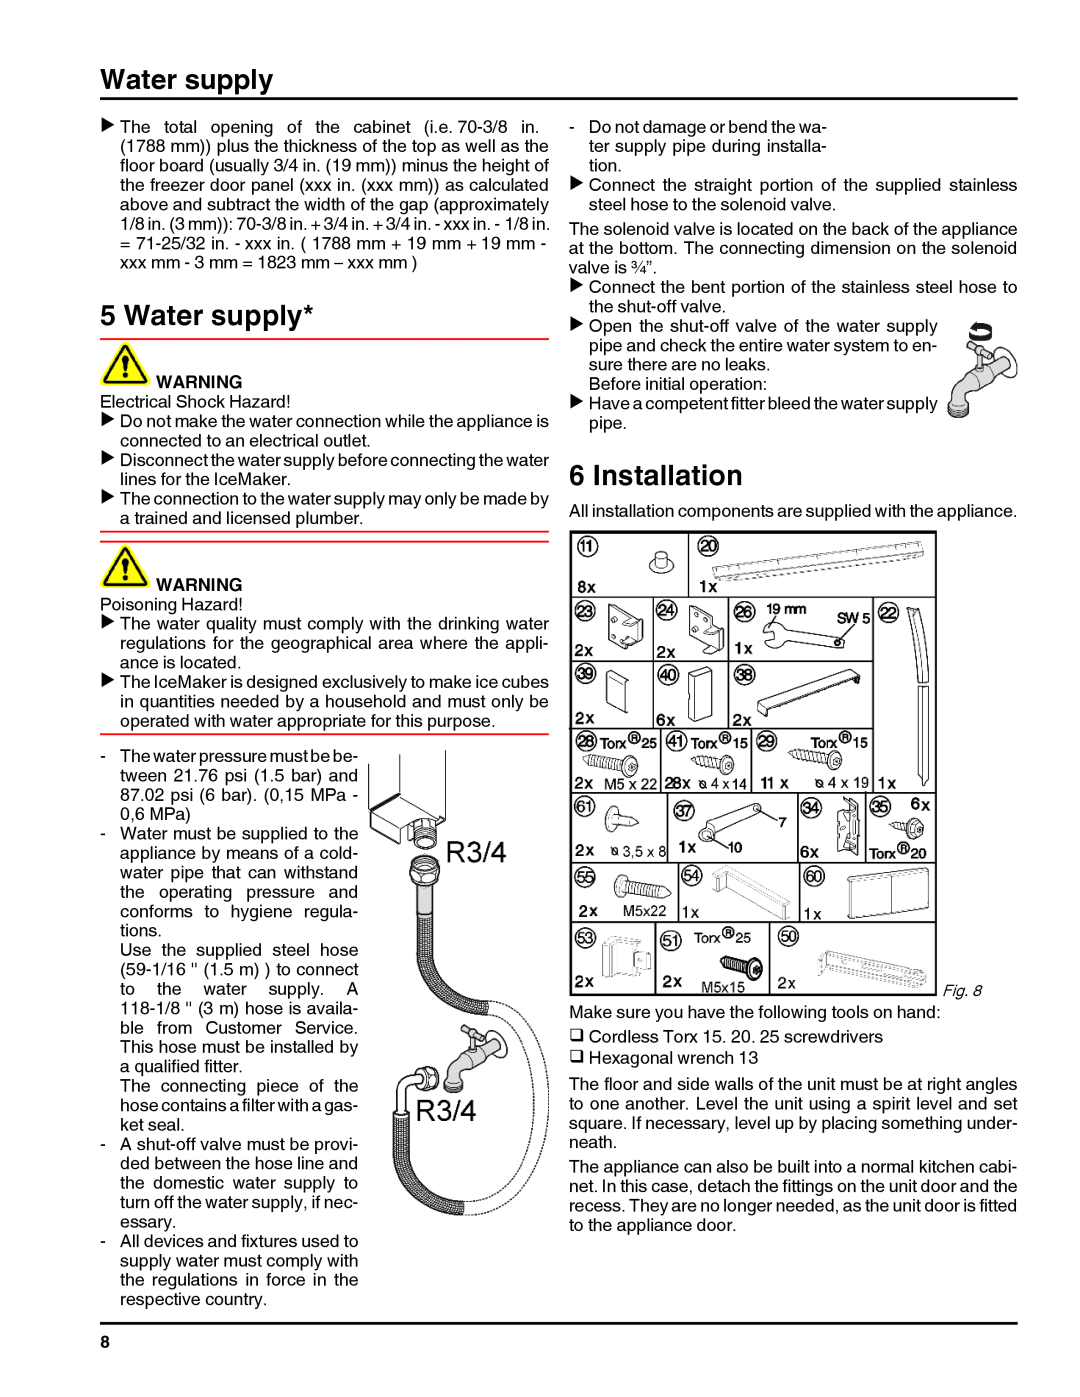 Liebherr HC1011, HC1060 installation instructions Water supply, Installation 